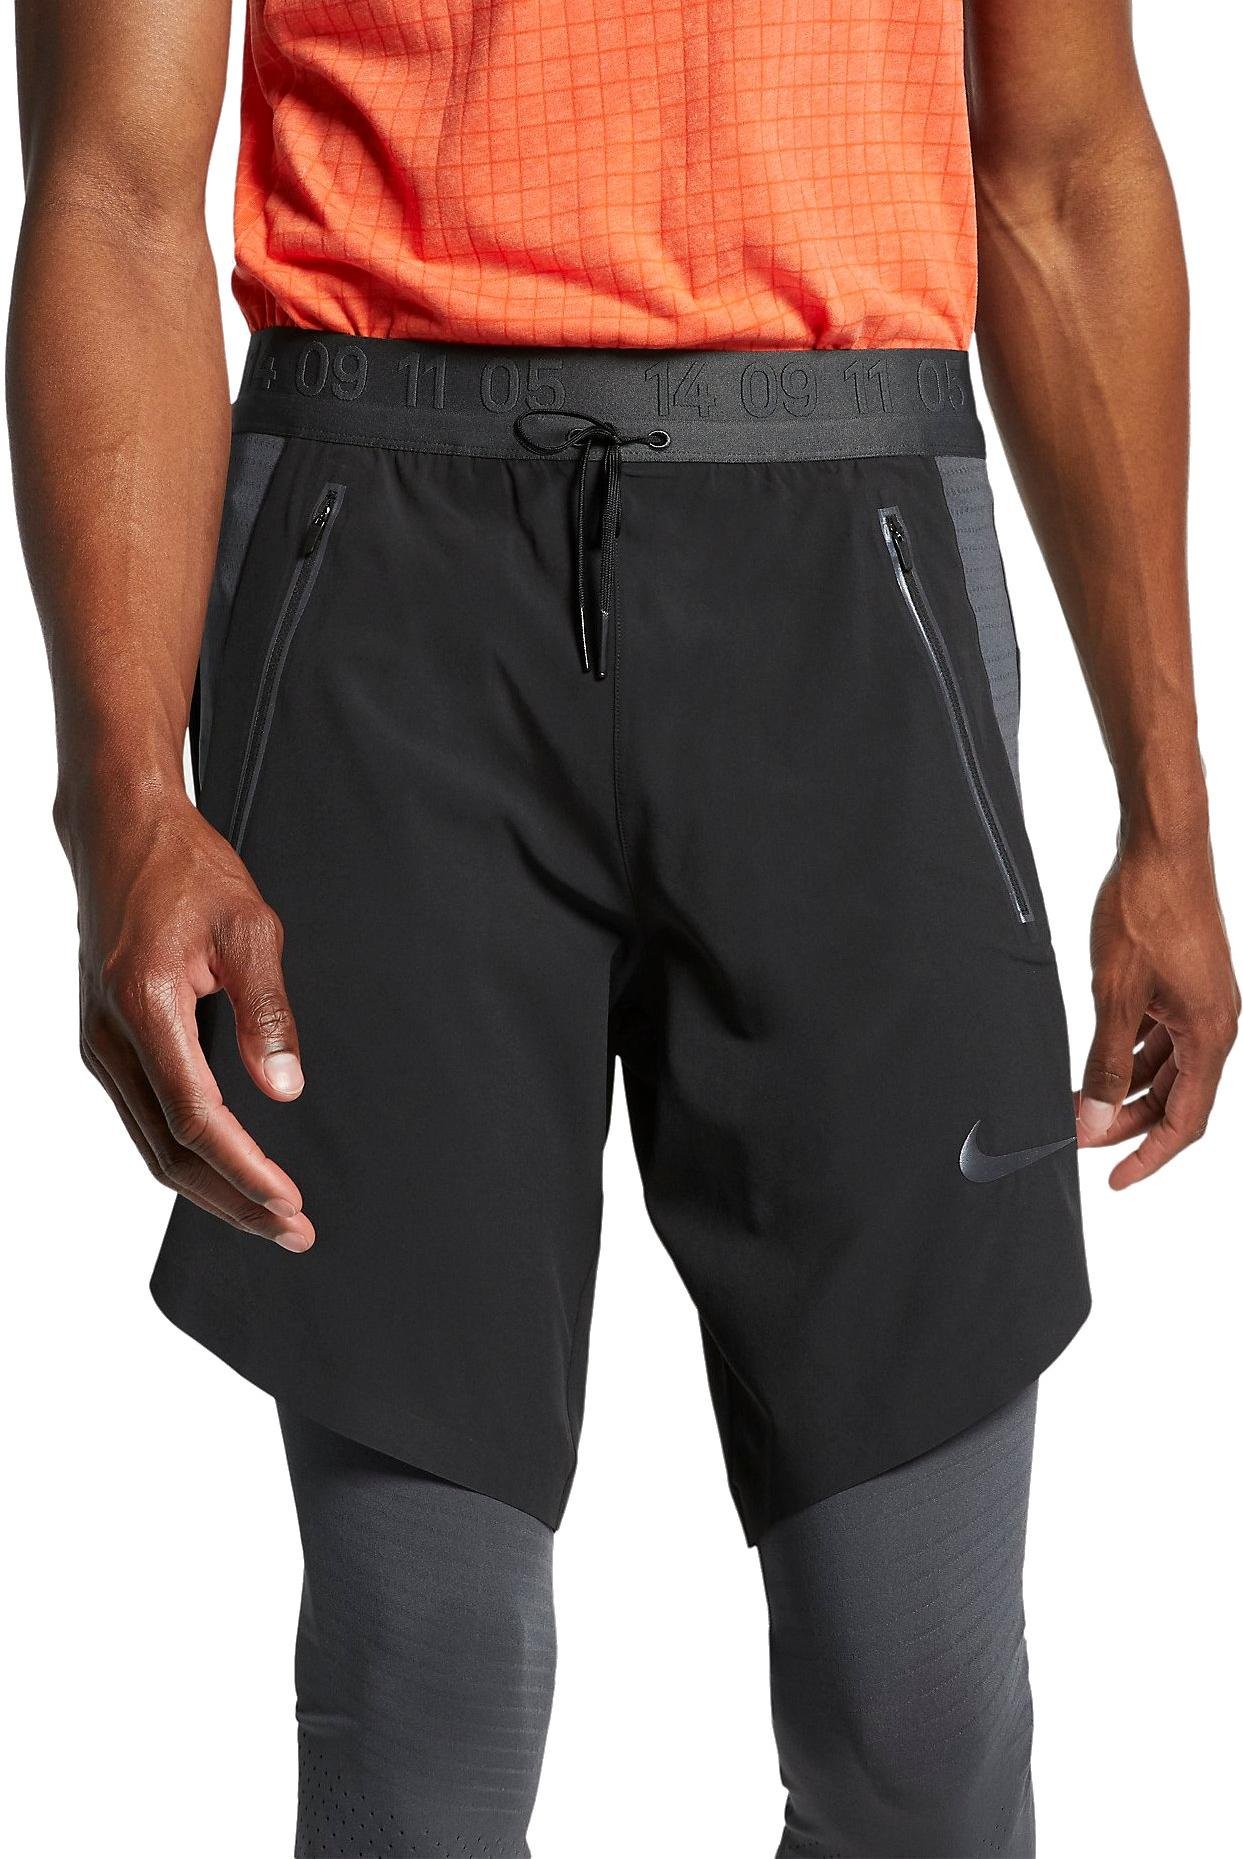 Pánské tříčtvrteční běžecké kalhoty Nike Tech Pack